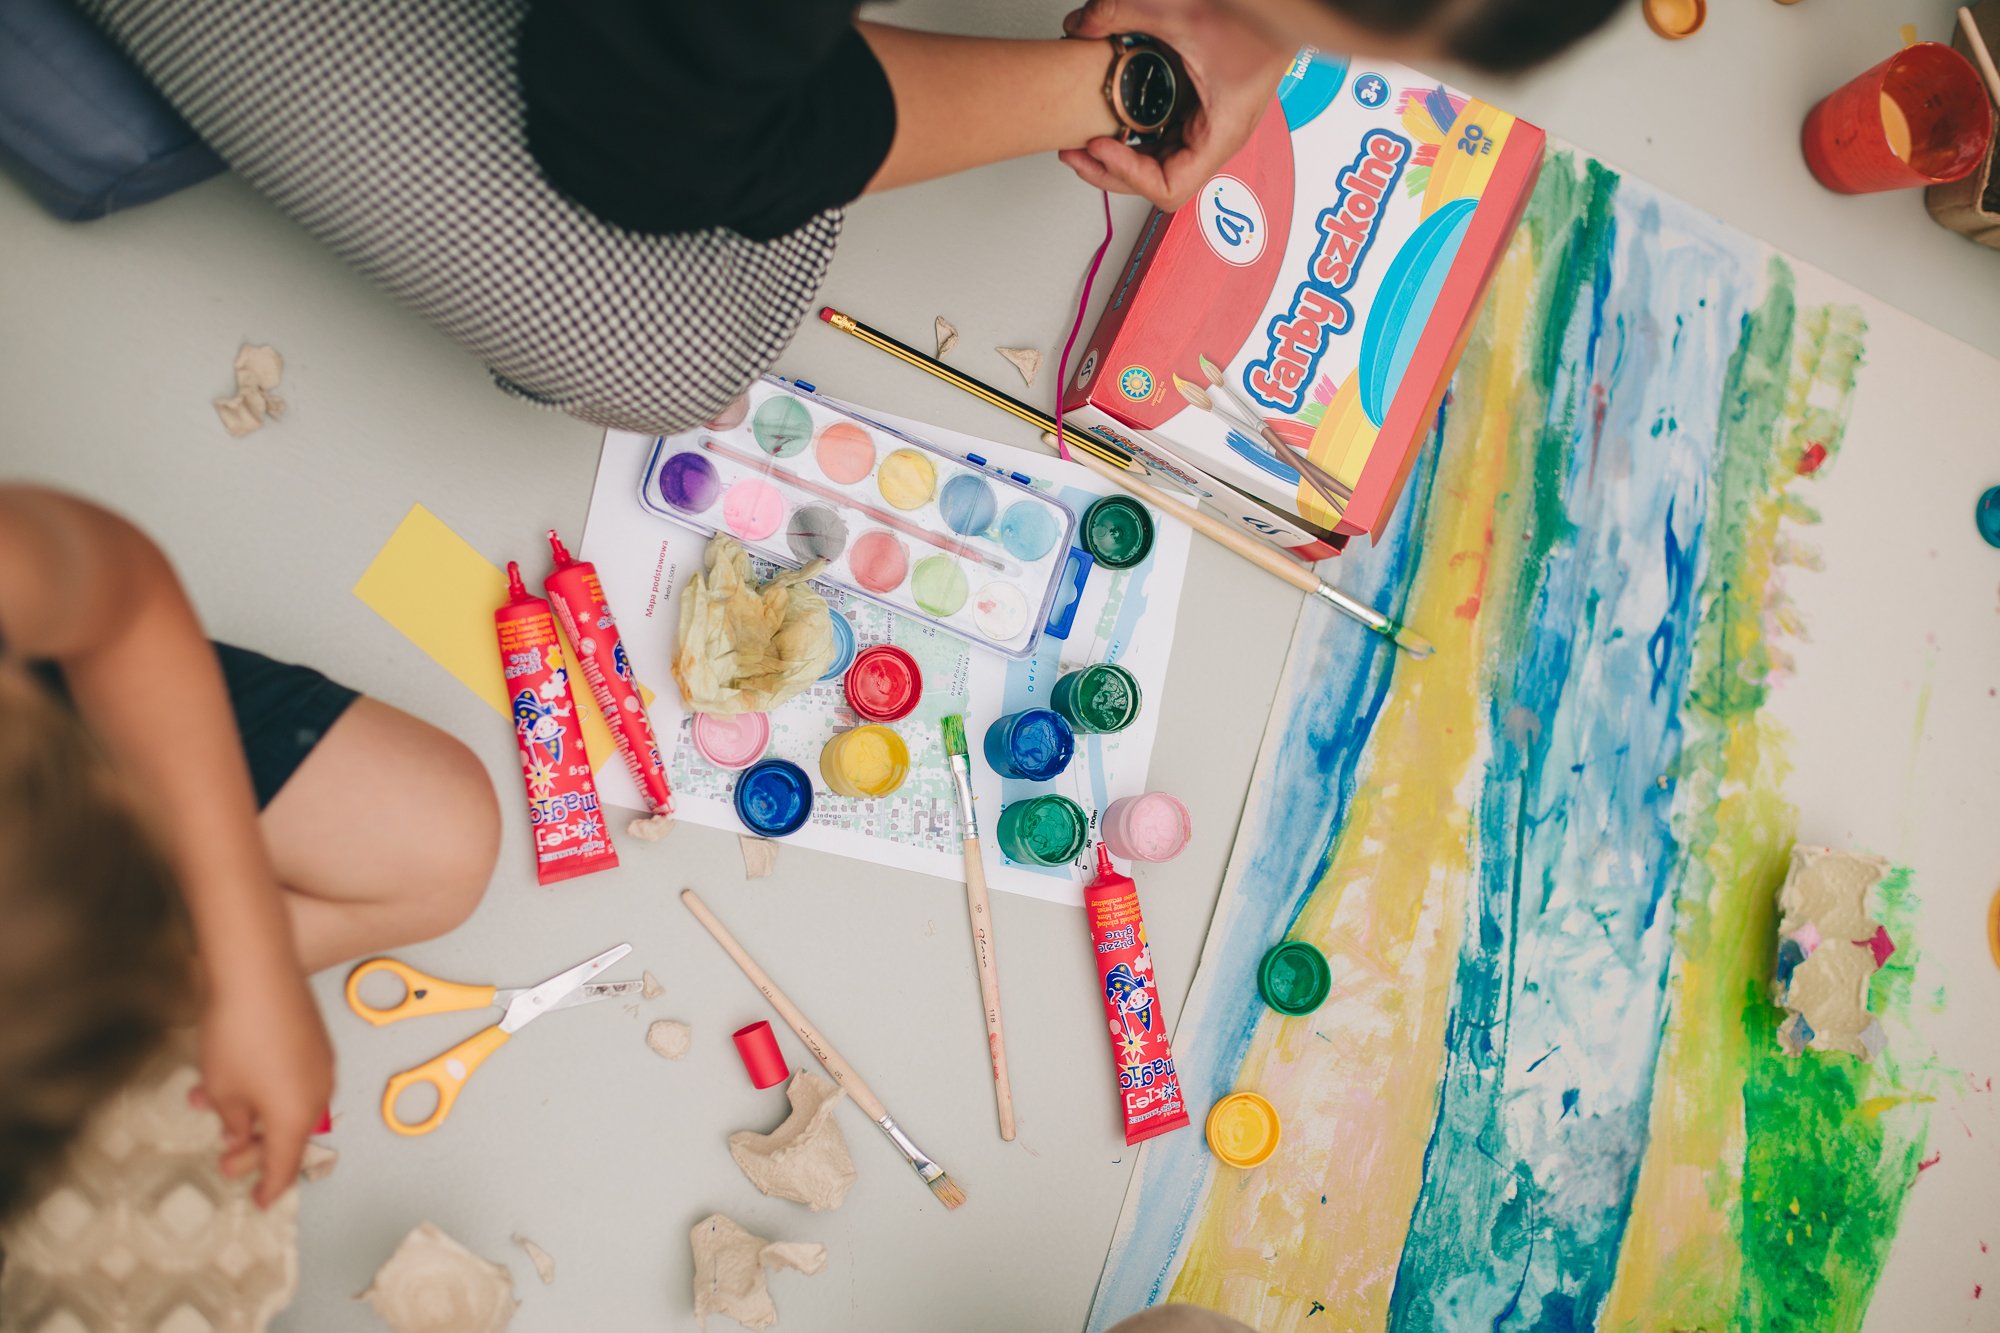 Dwójka dzieciaków siedzi na podłodze i maluje farbami. Przed nimi oprócz obrazu leżą farby, kleje, pędzelki i różne materiały plastyczne.